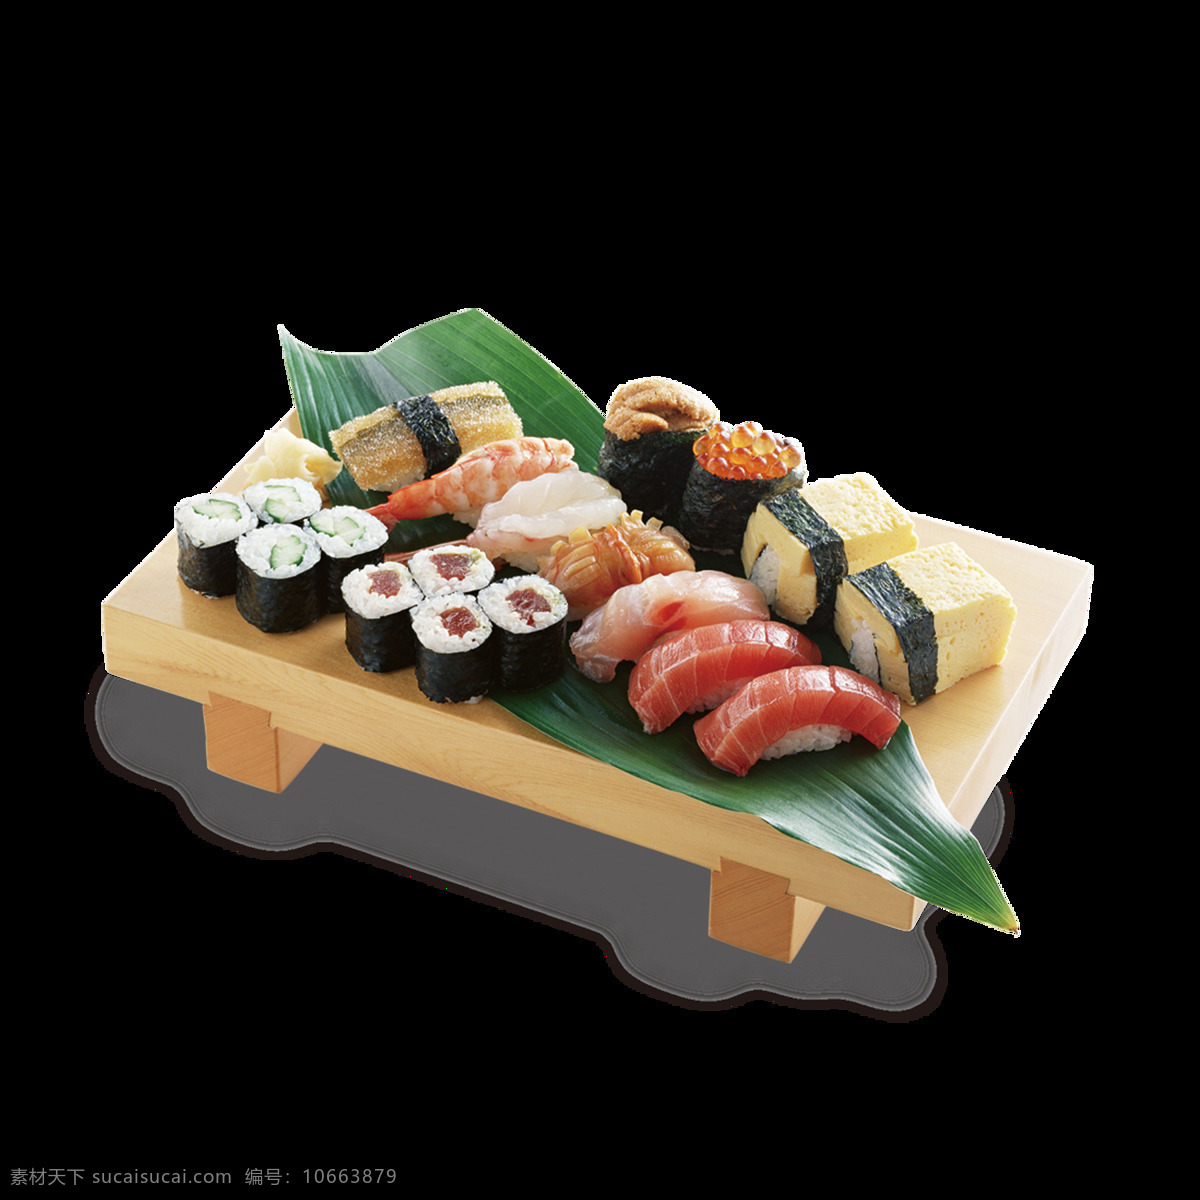 色彩 明亮 日式 三文鱼 料理 美食 产品 实物 荷叶 三文鱼片 生鲜三文鱼 生鱼片 寿司 竹盘